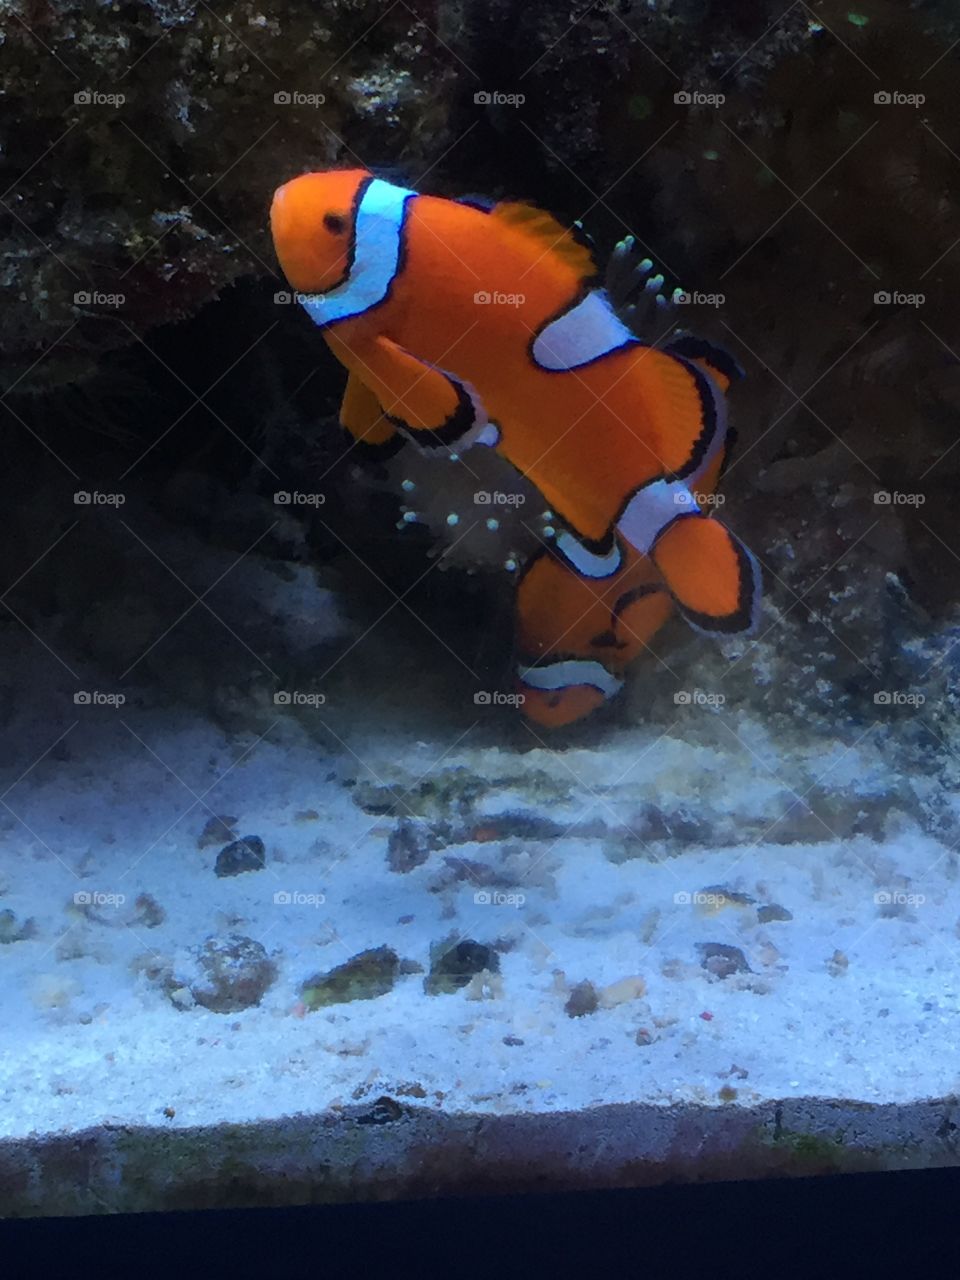 Finding nemo !!! At the Quebec aquarium, clown fish